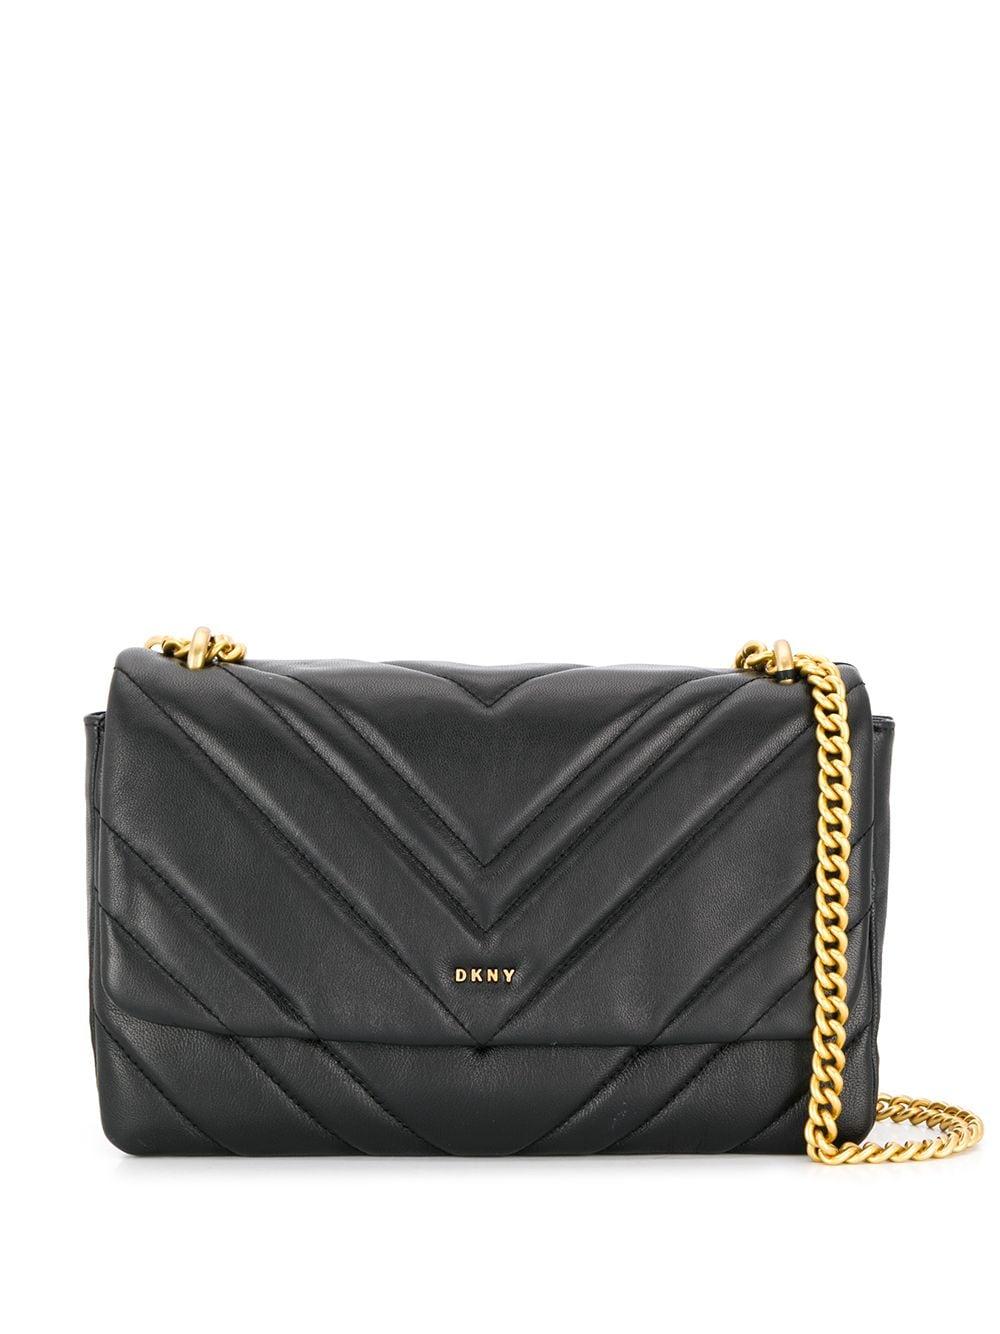 DKNY Leder Gesteppte Handtasche in Schwarz Damen Taschen Schultertaschen 